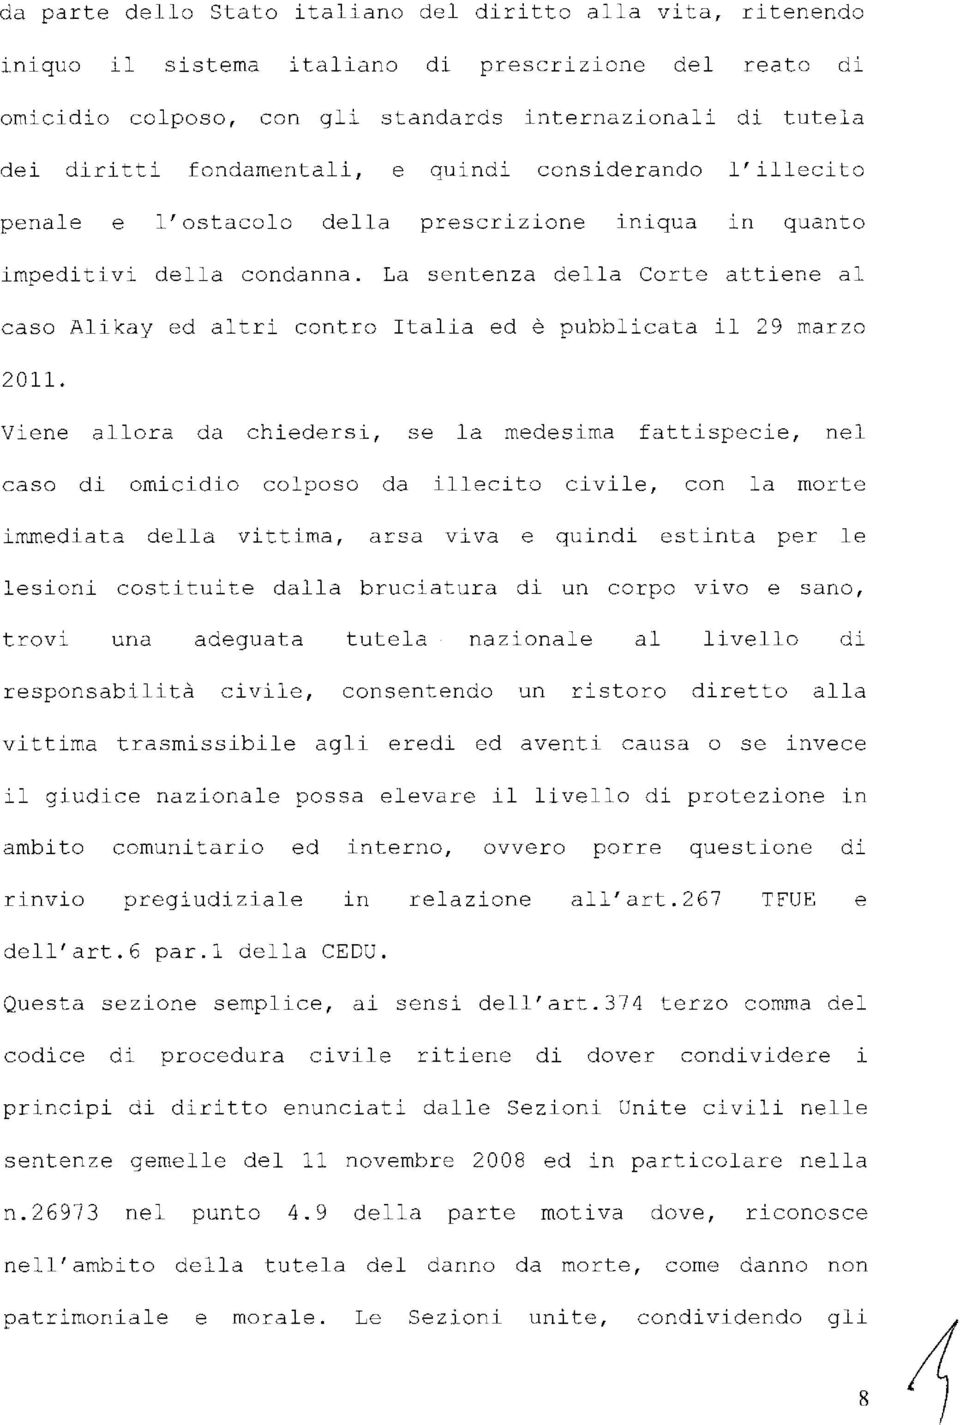 La sentenza della Corte attiene al caso Alikay ed altri contro Italia ed è pubblicata il 29 marzo 2011.